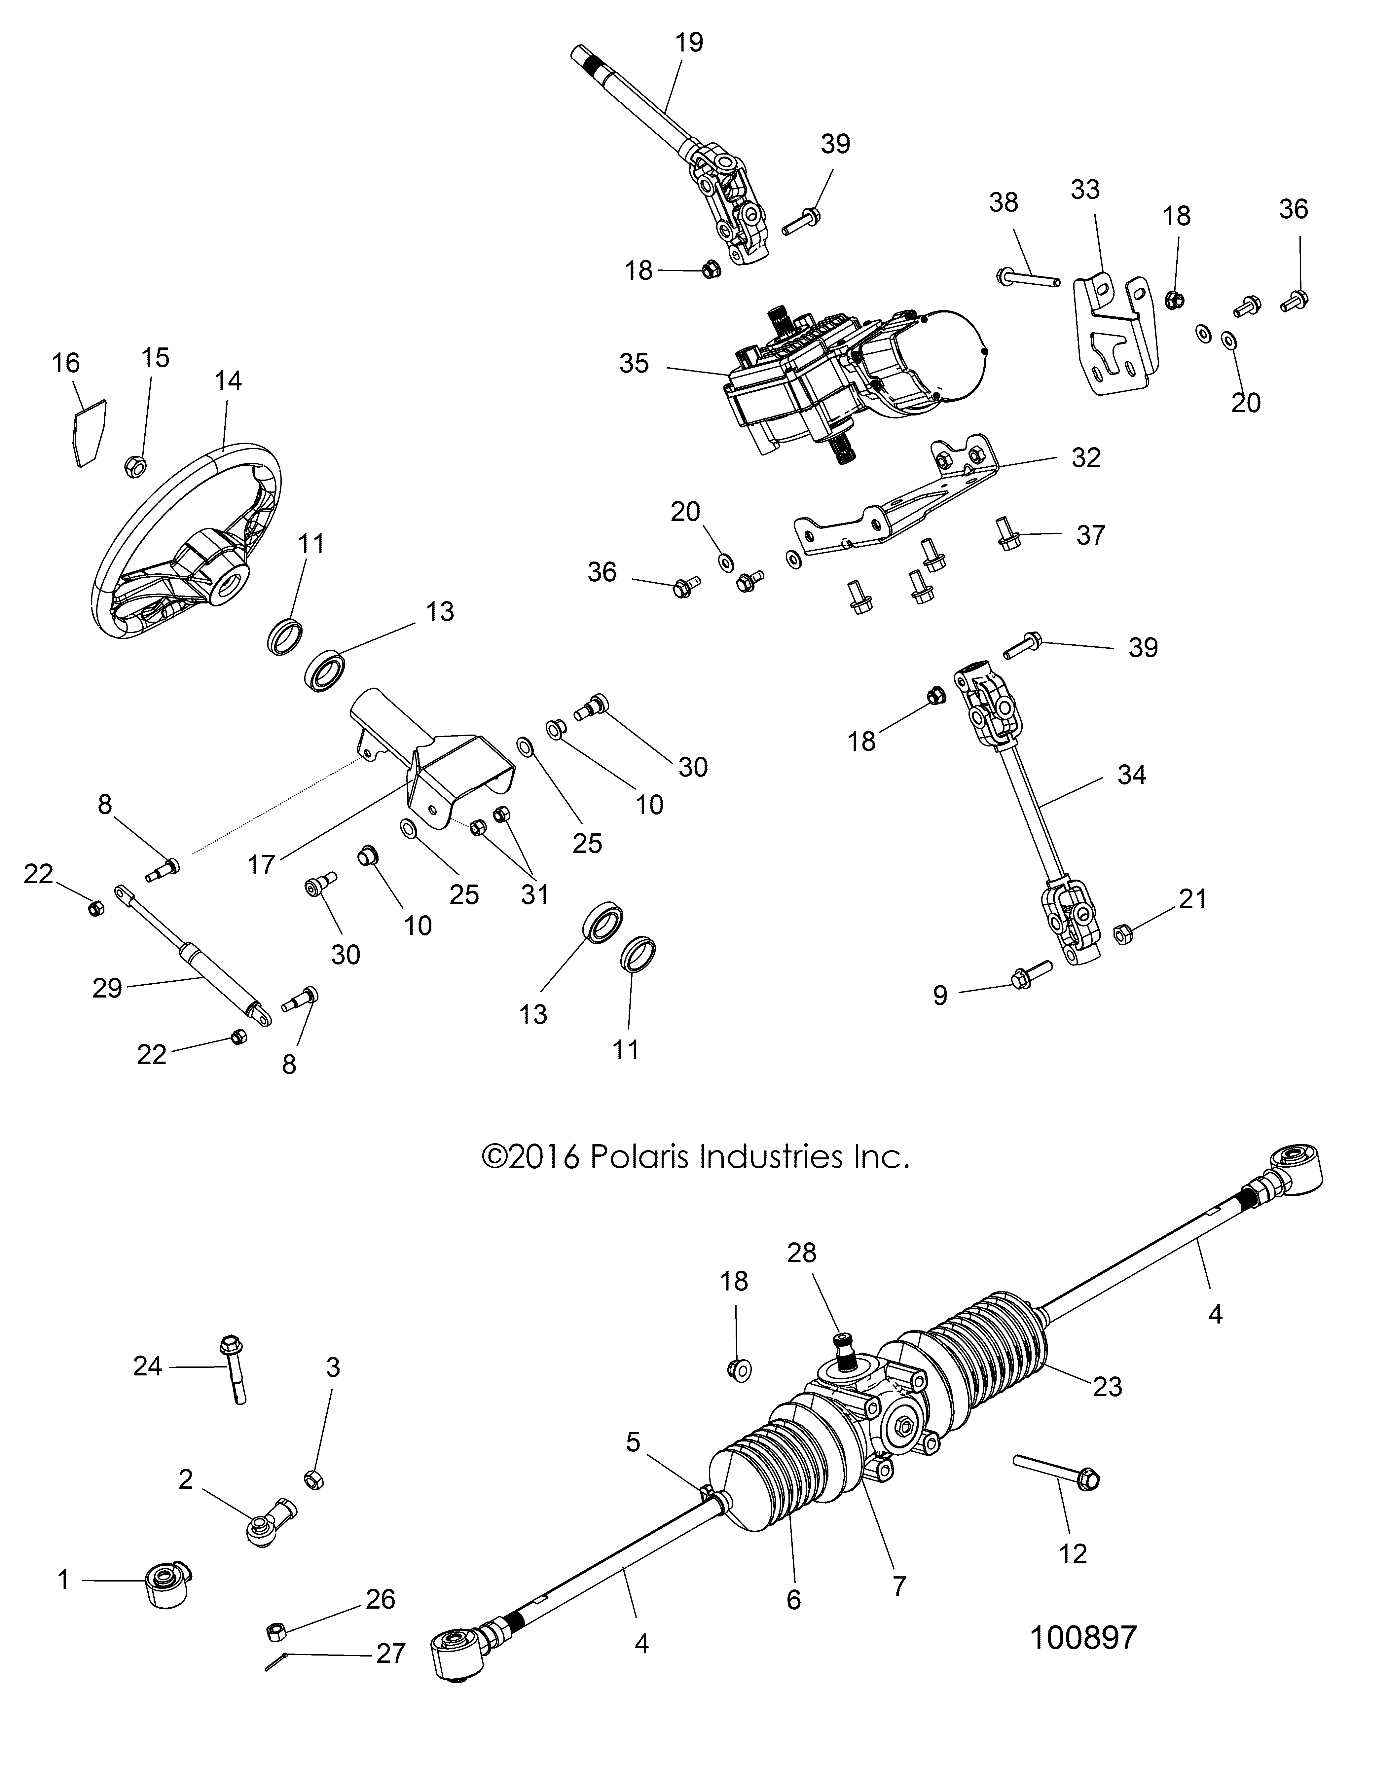 Foto diagrama Polaris que contem a peça 5450255-293